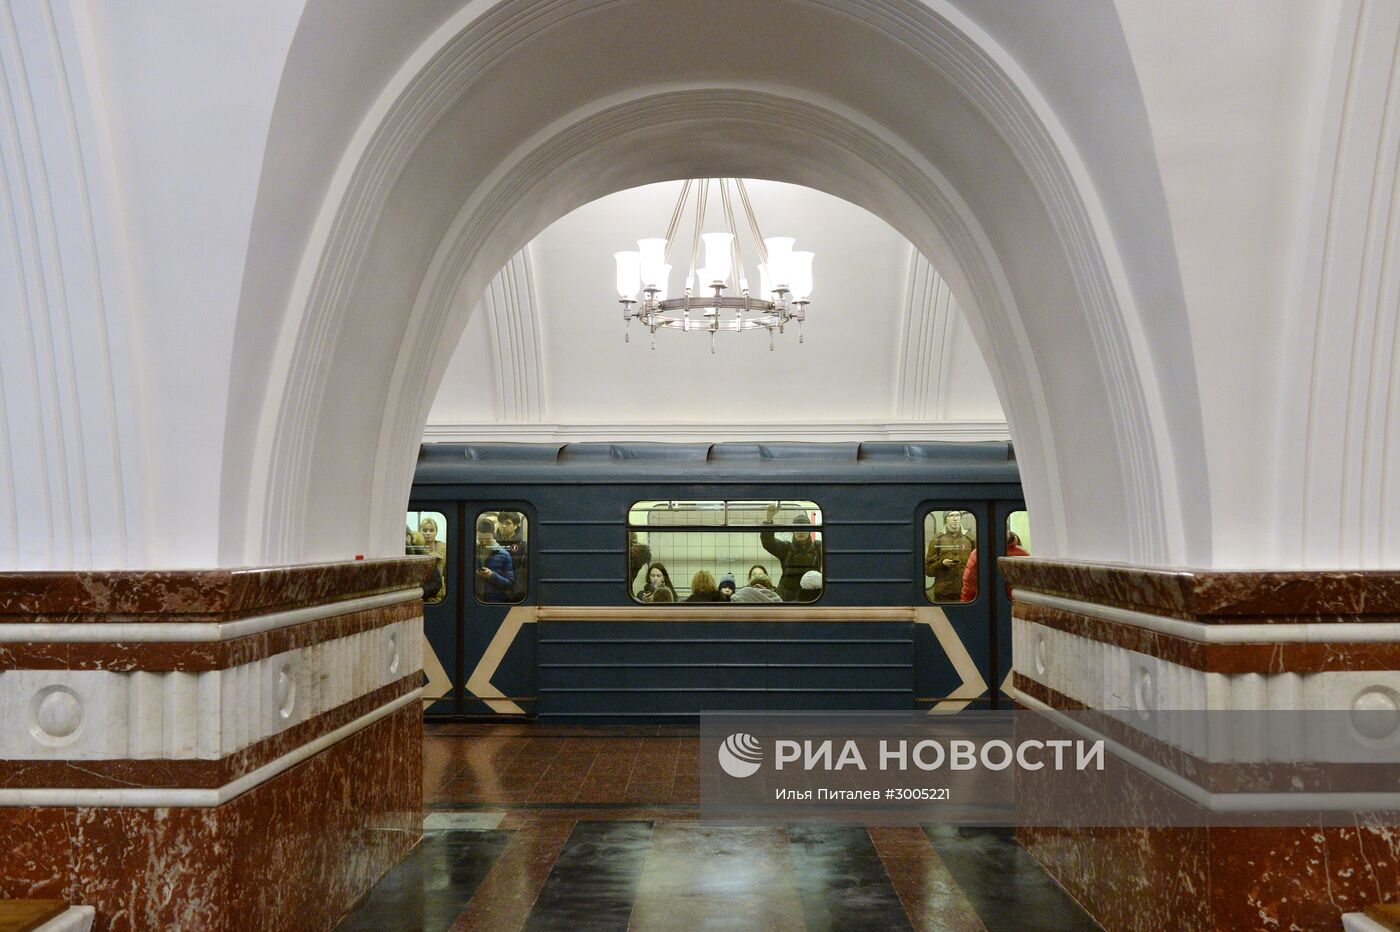 Открытие станции метро "Фрунзенская"